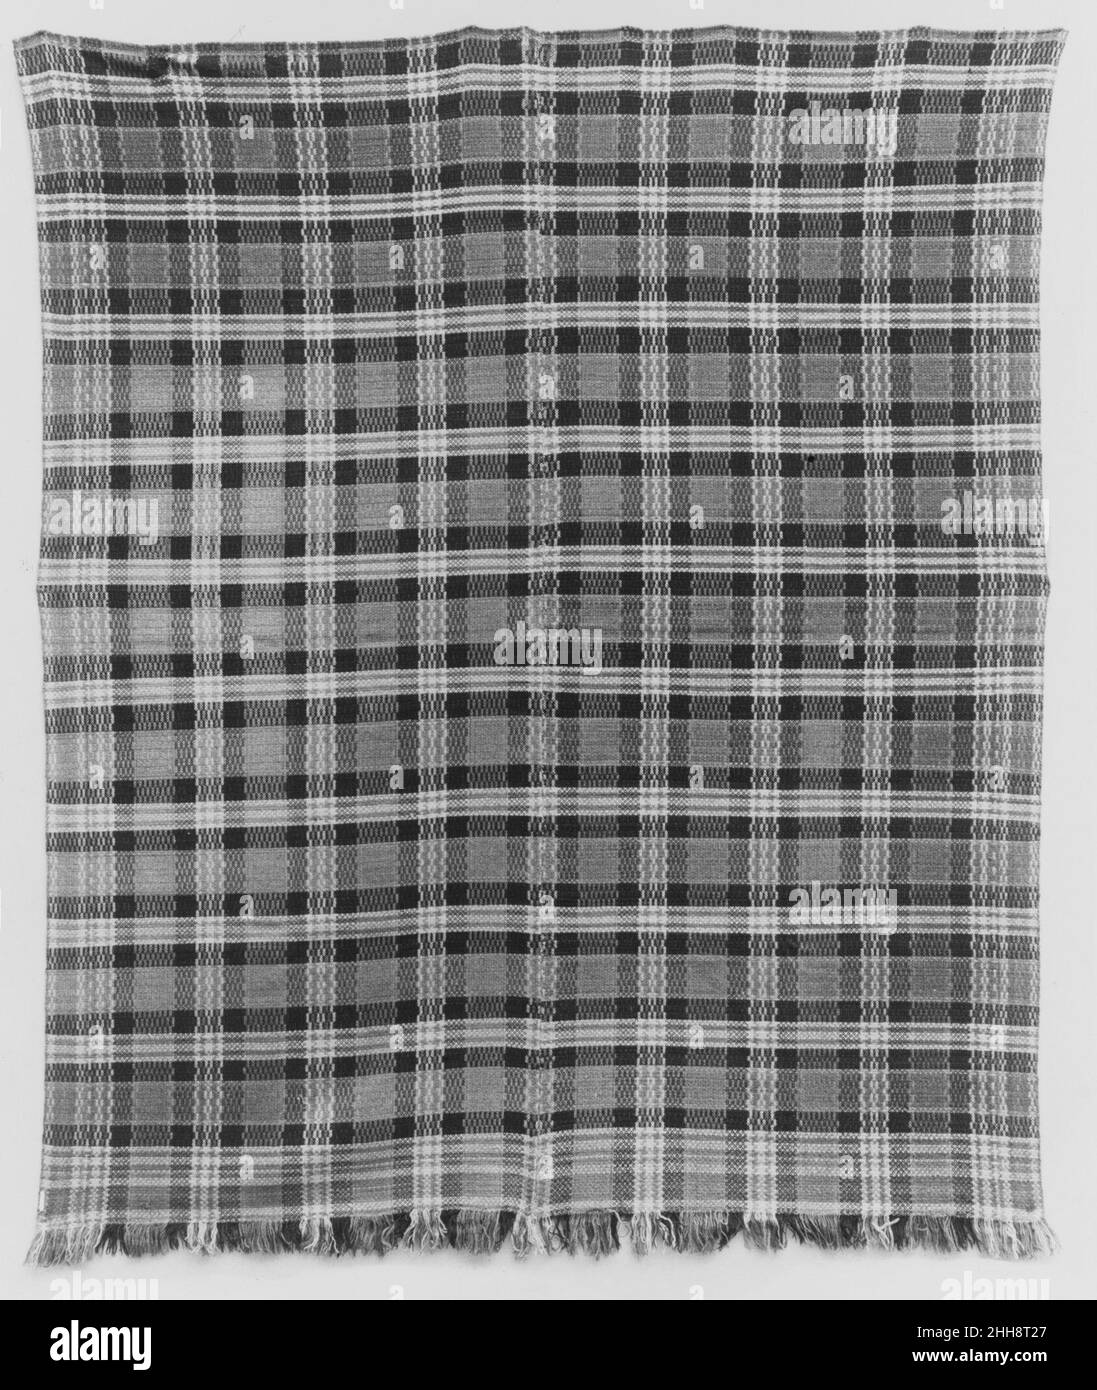 Couvre-lit à motif écossais ca.1840 américain ce couvre-lit à carreaux est tissé de laine brune, bleue, jaune et orange en deux panneaux et est encadré au centre.Il a une frange naturelle le long du fond.Couvre-lit en tissu écossais 13633 Banque D'Images